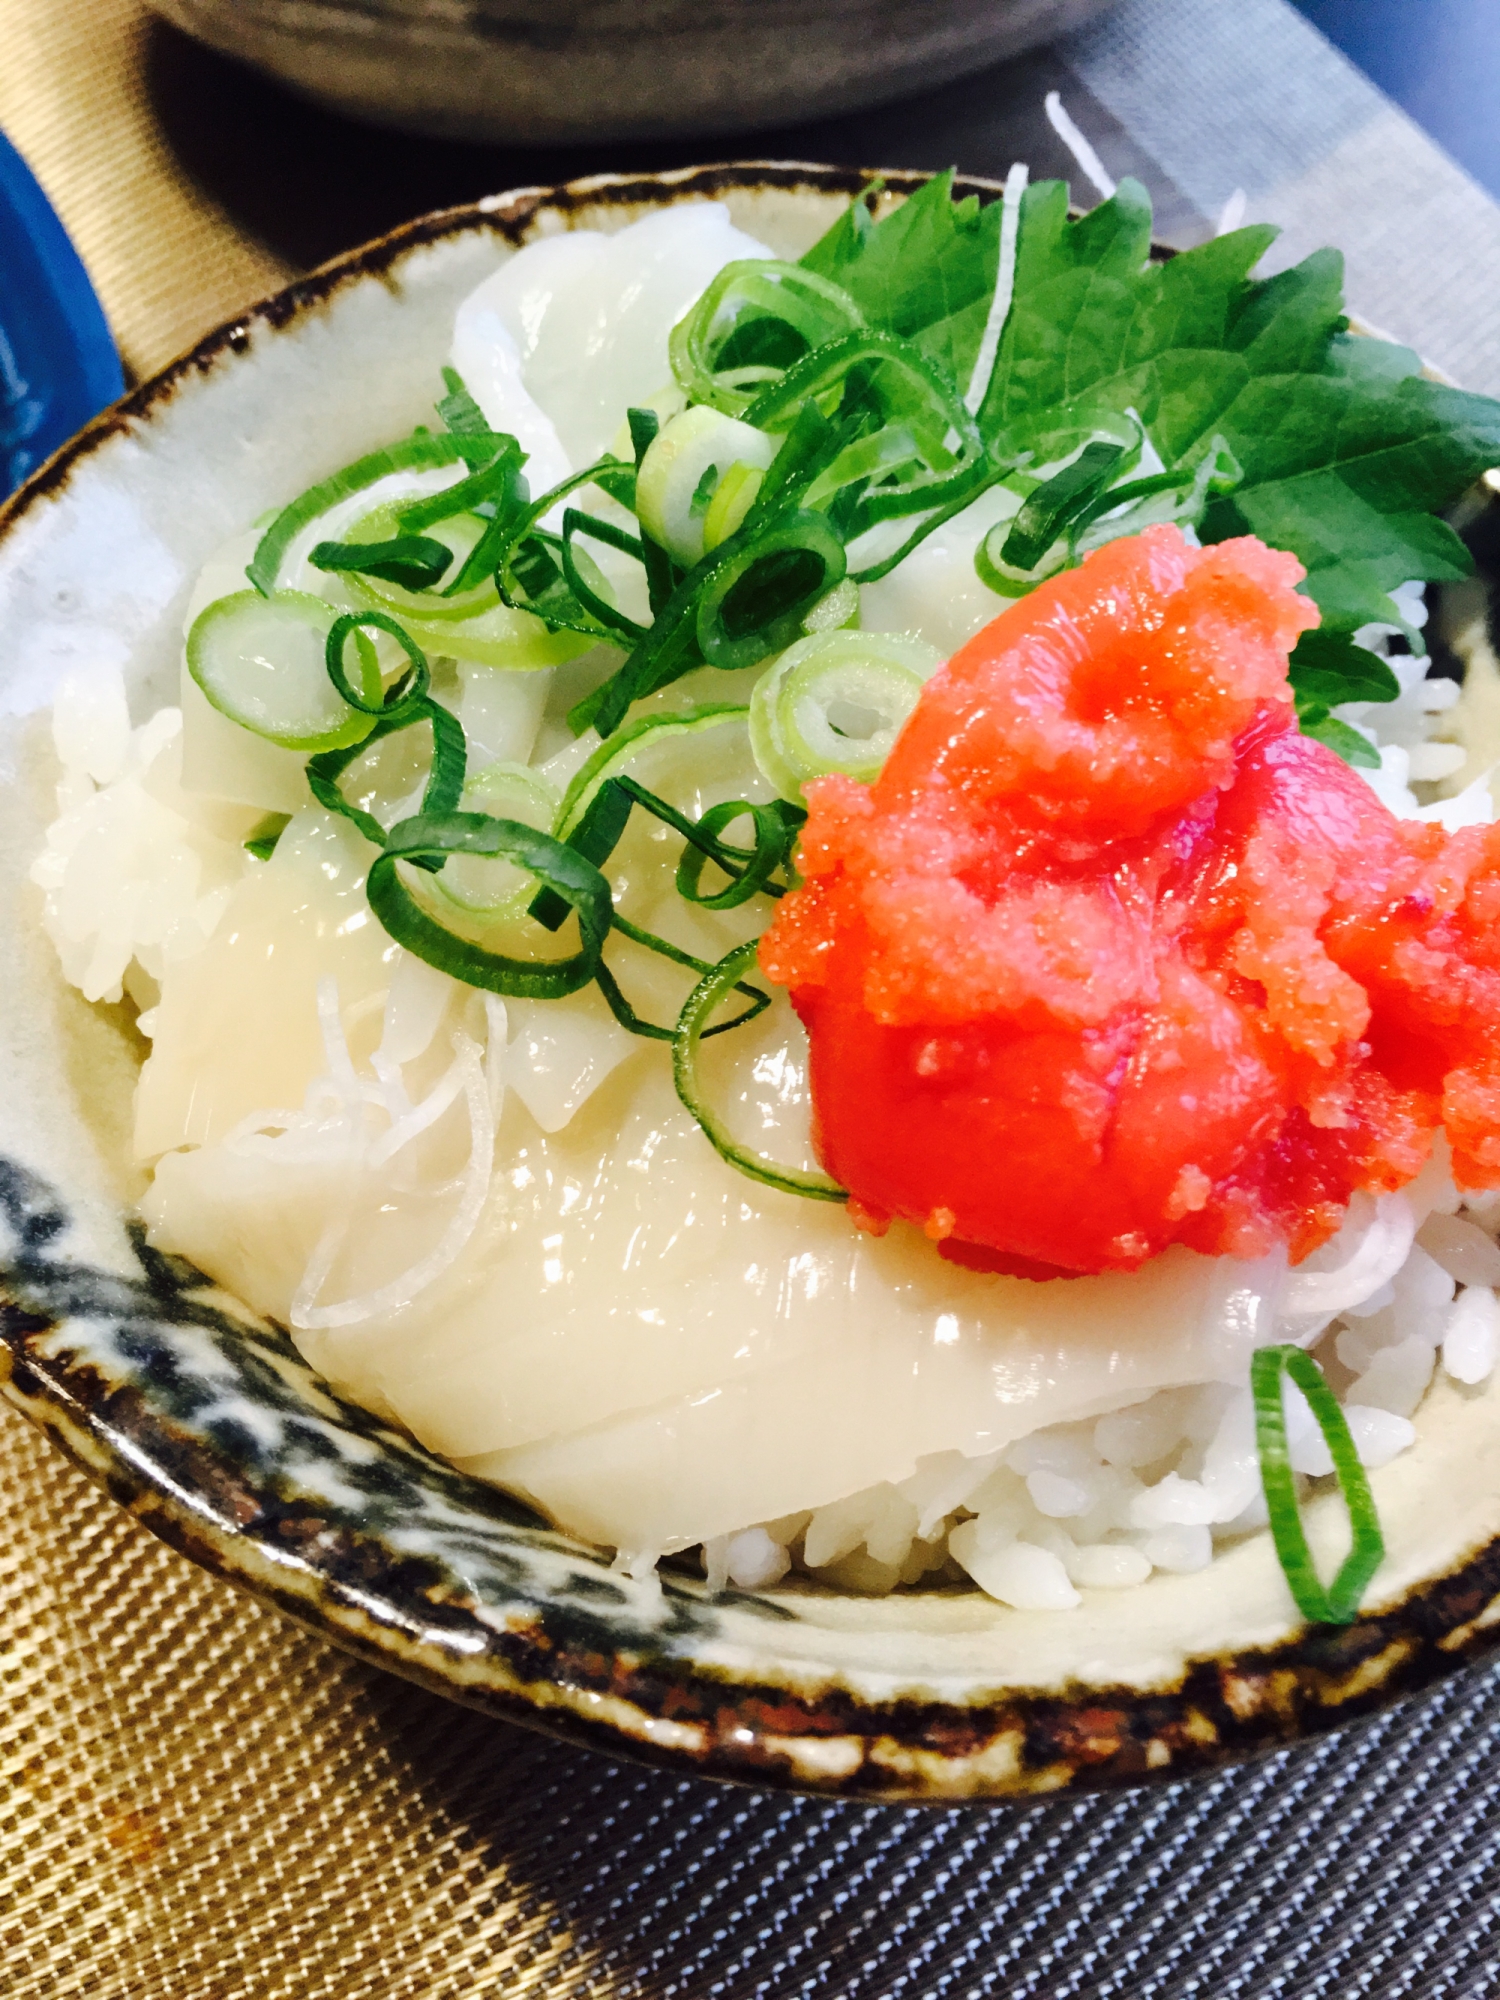 イカ明太レシピ 作り方の人気順 簡単料理の楽天レシピ